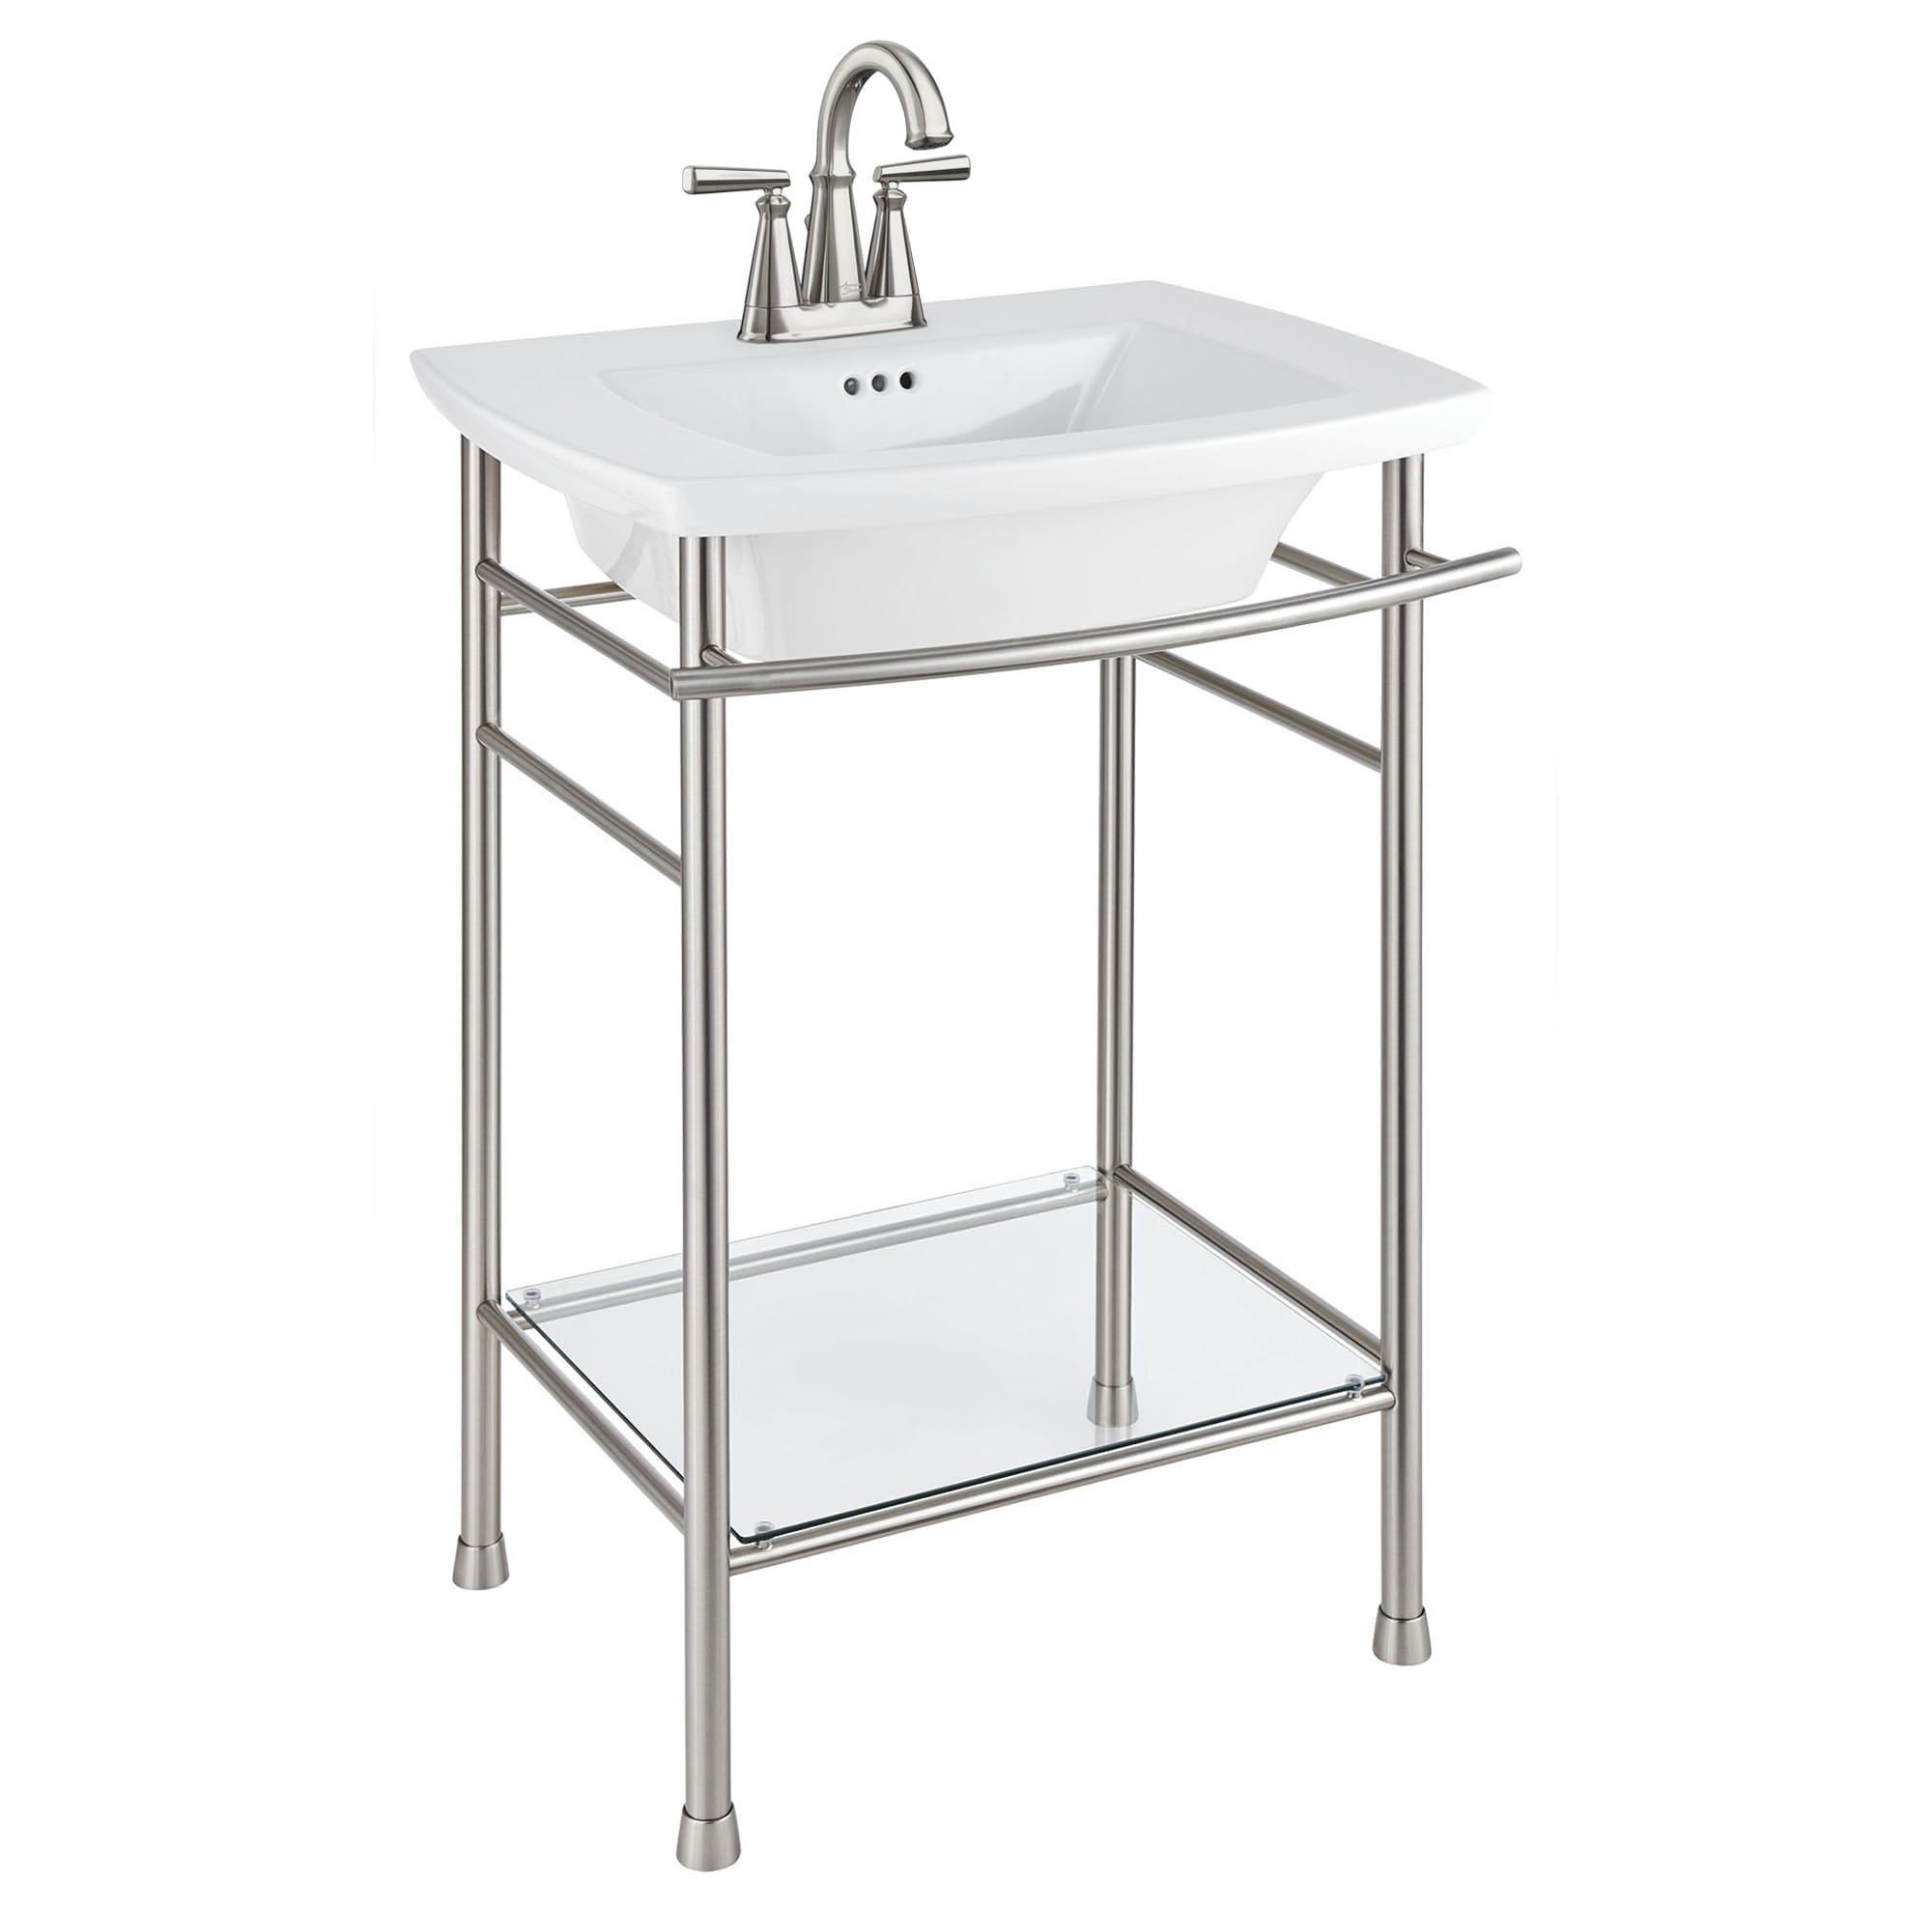 Edgemere® 4-Inch Centerset Pedestal Sink Top